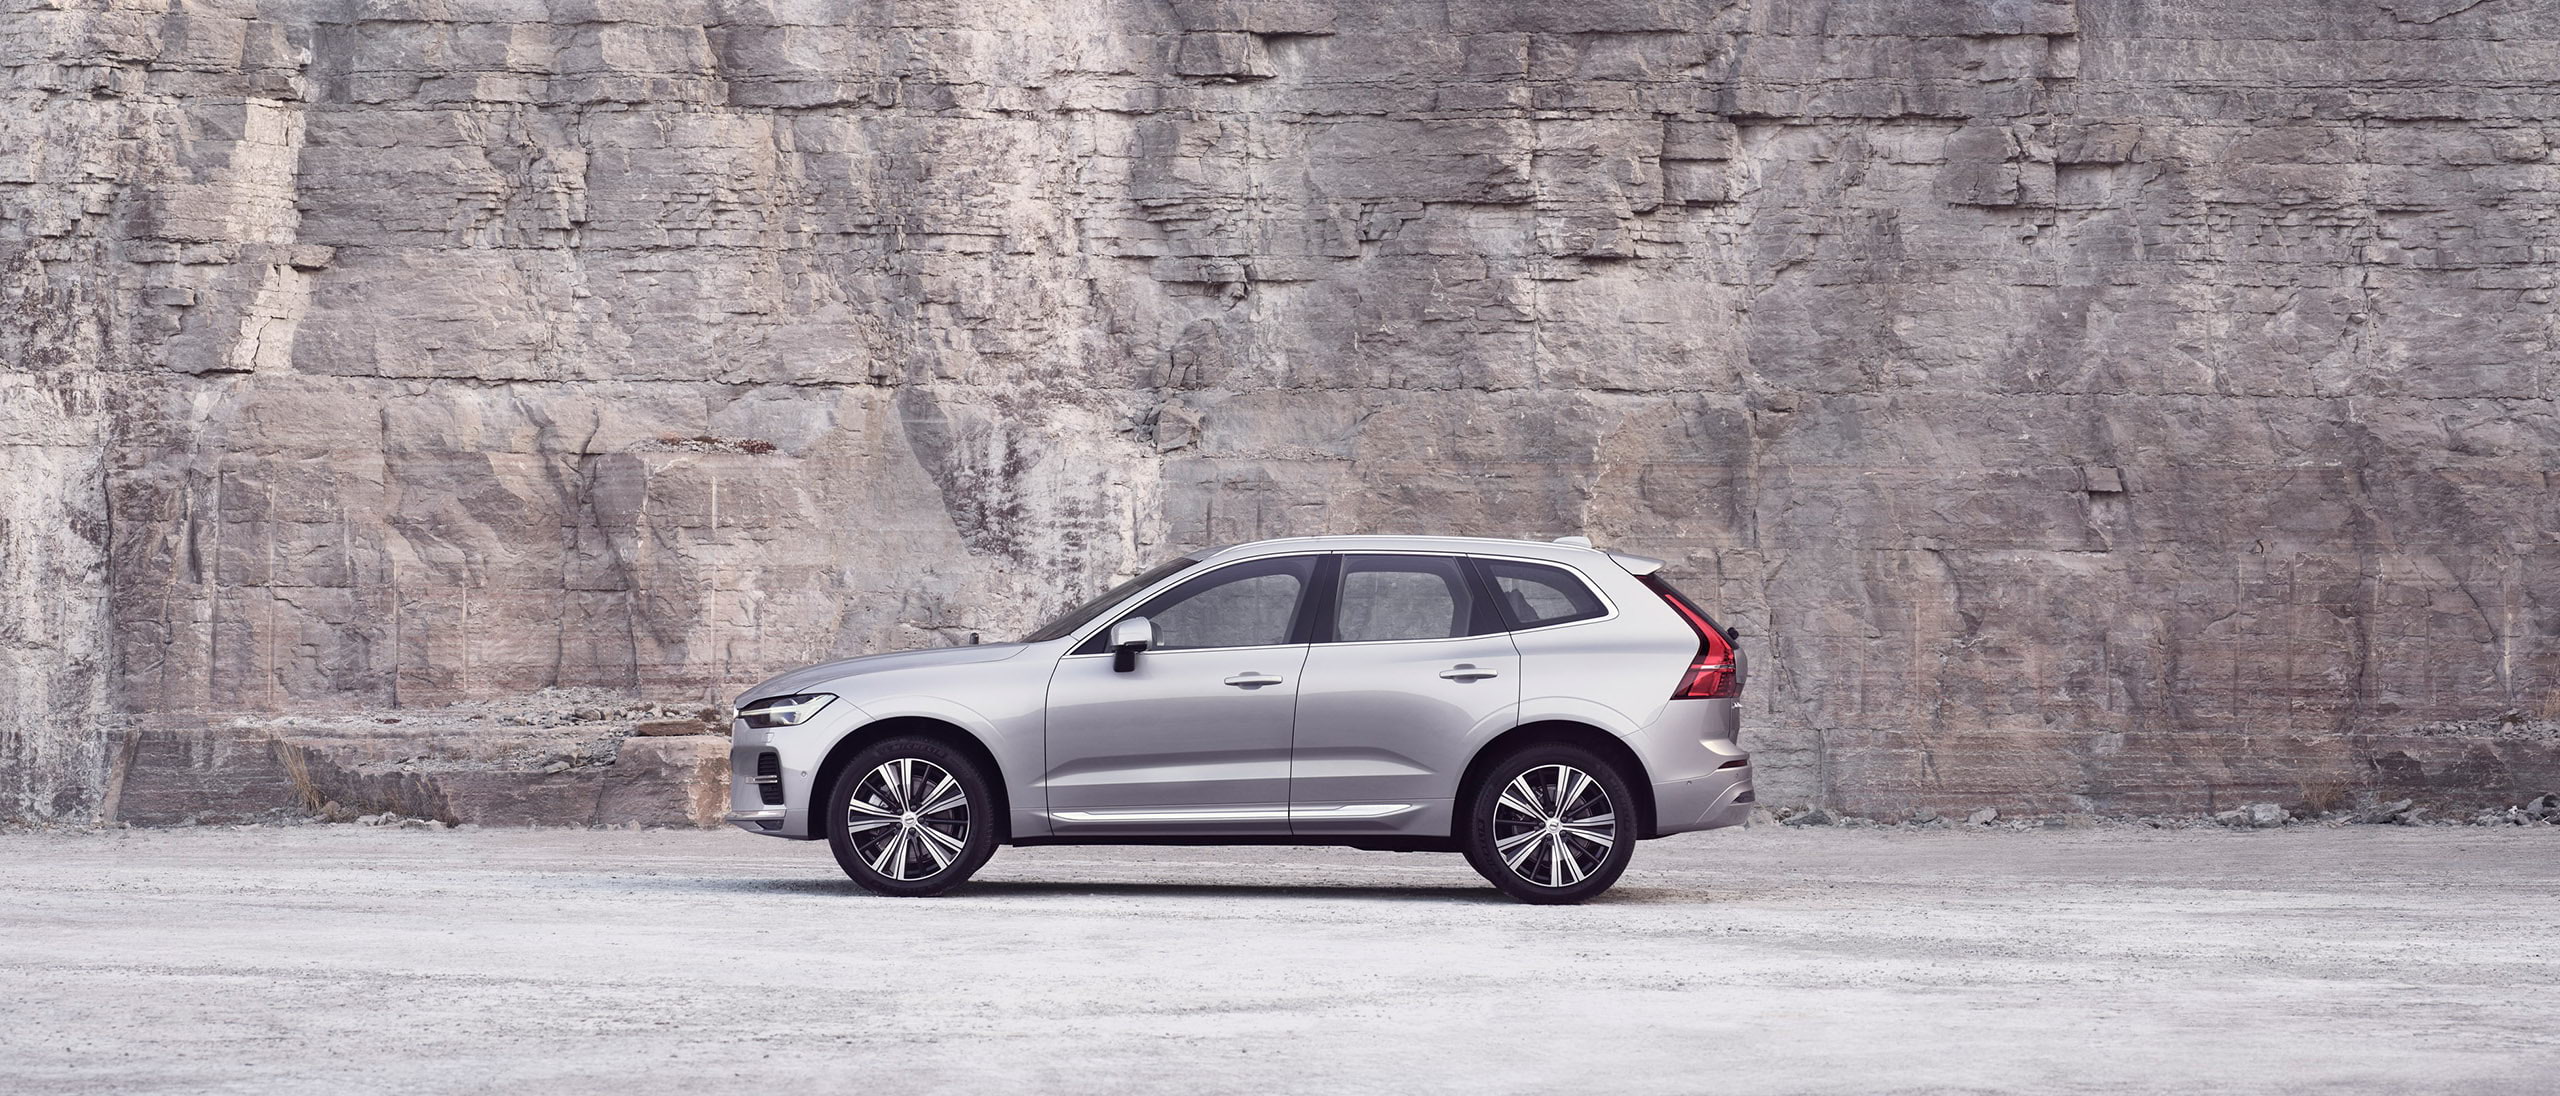 Xe Volvo XC60 màu bạc đang đỗ trước bức tường đá.